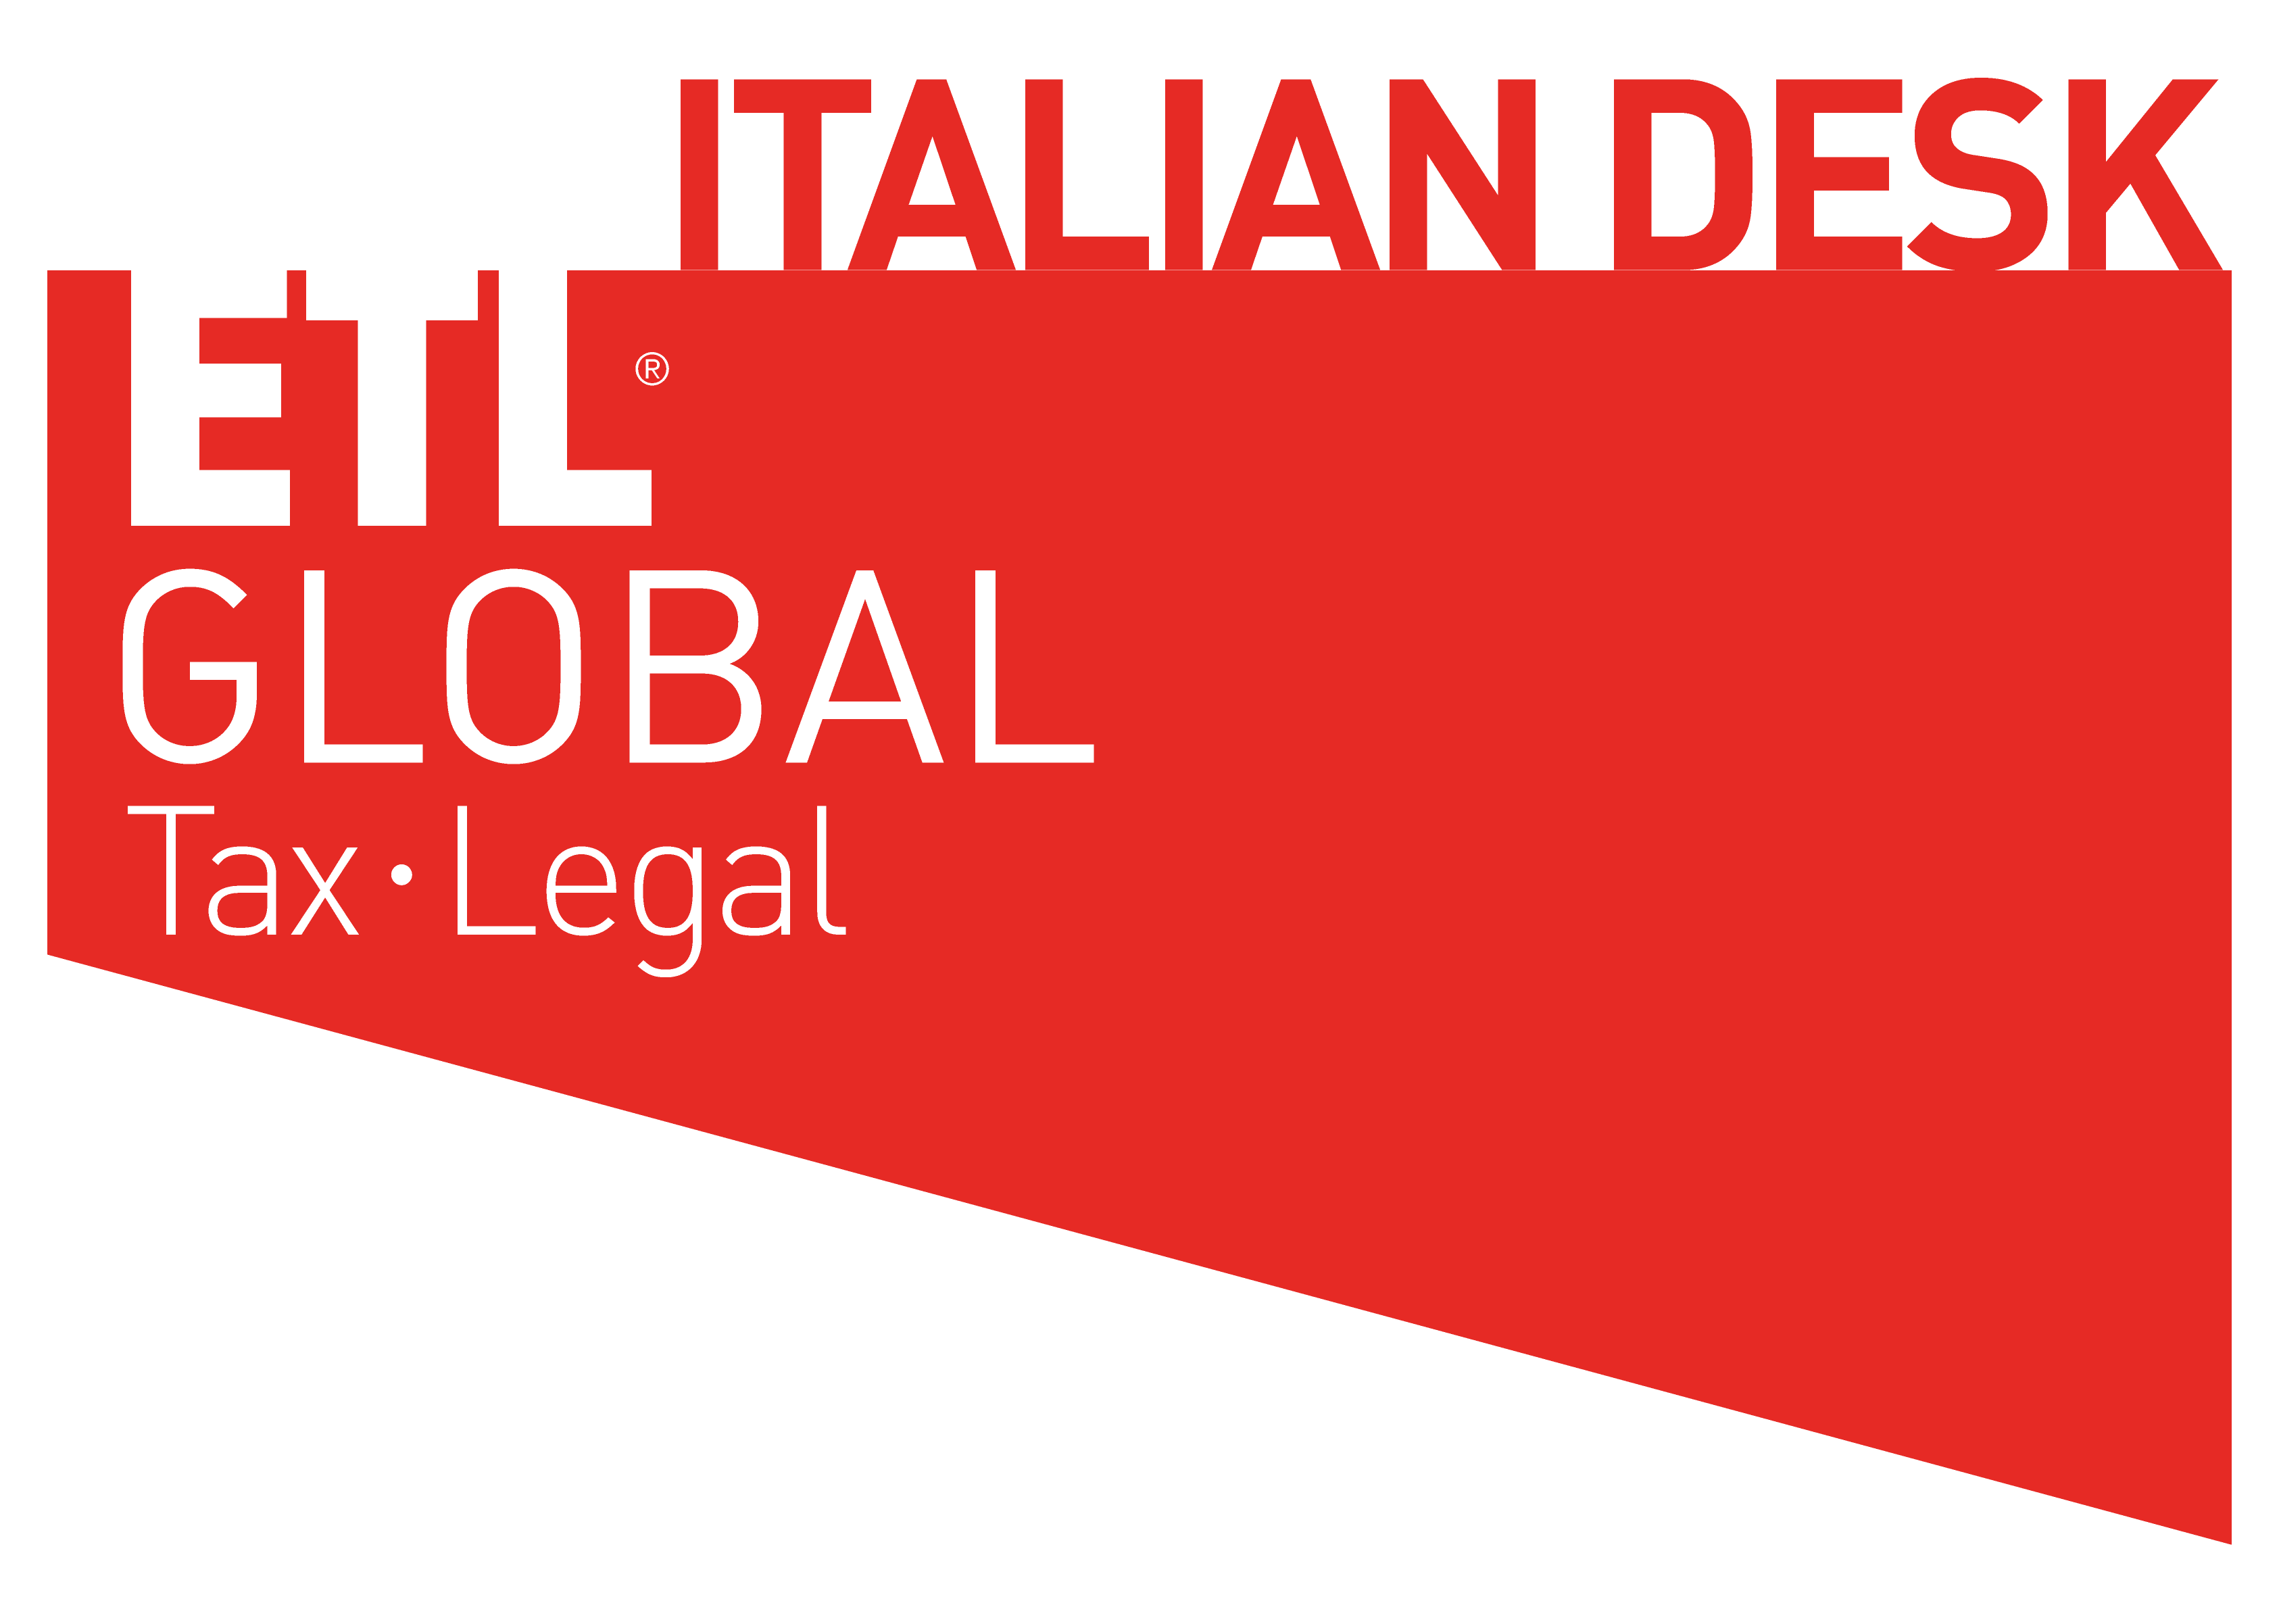 ITALIAN DESK - ETL GLOBAL